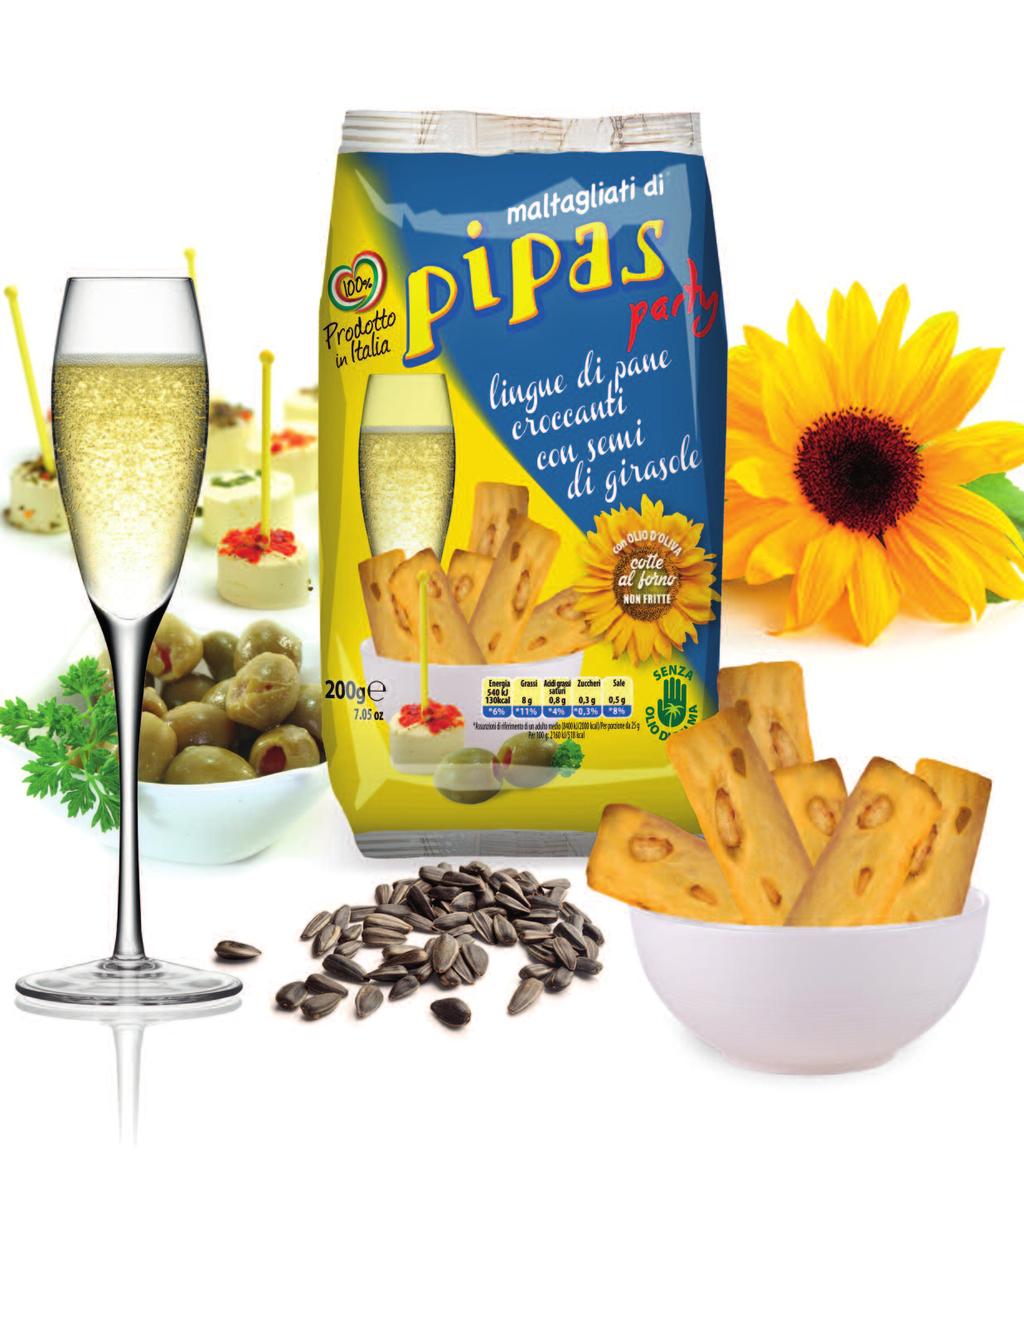 PIPAS, il nuovo snack salato per uno spuntino gustoso e originale.